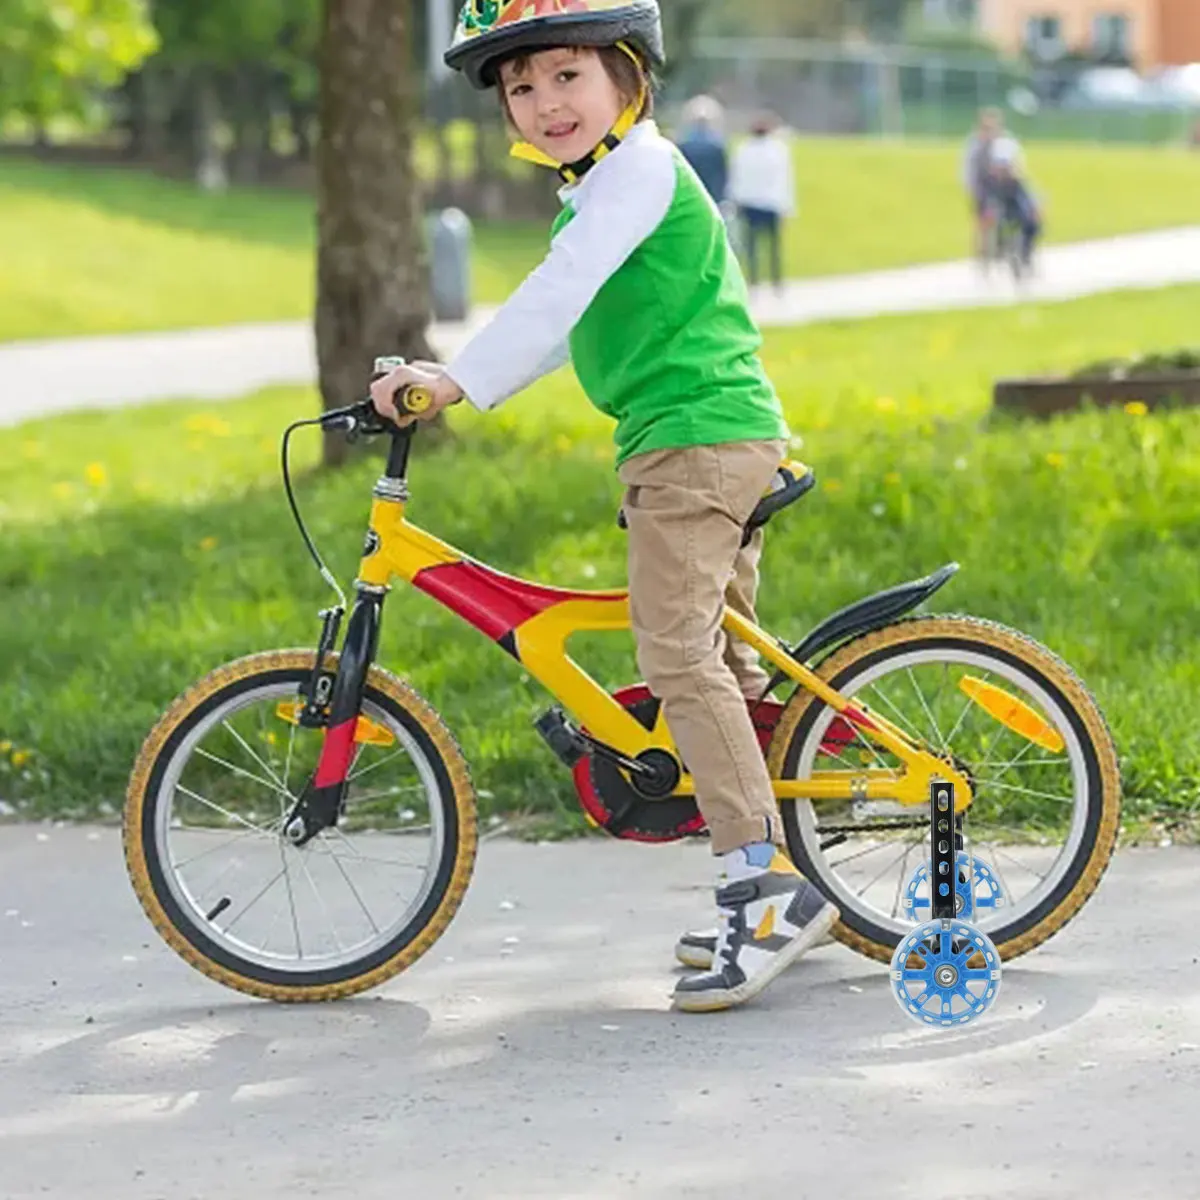 2pcs ילדים האופניים המייצבים אופניים מייצבים חזק יותר אילם האופניים גלגלי אנטי להחליק אופניים פלאש גלגל מייצב - 5